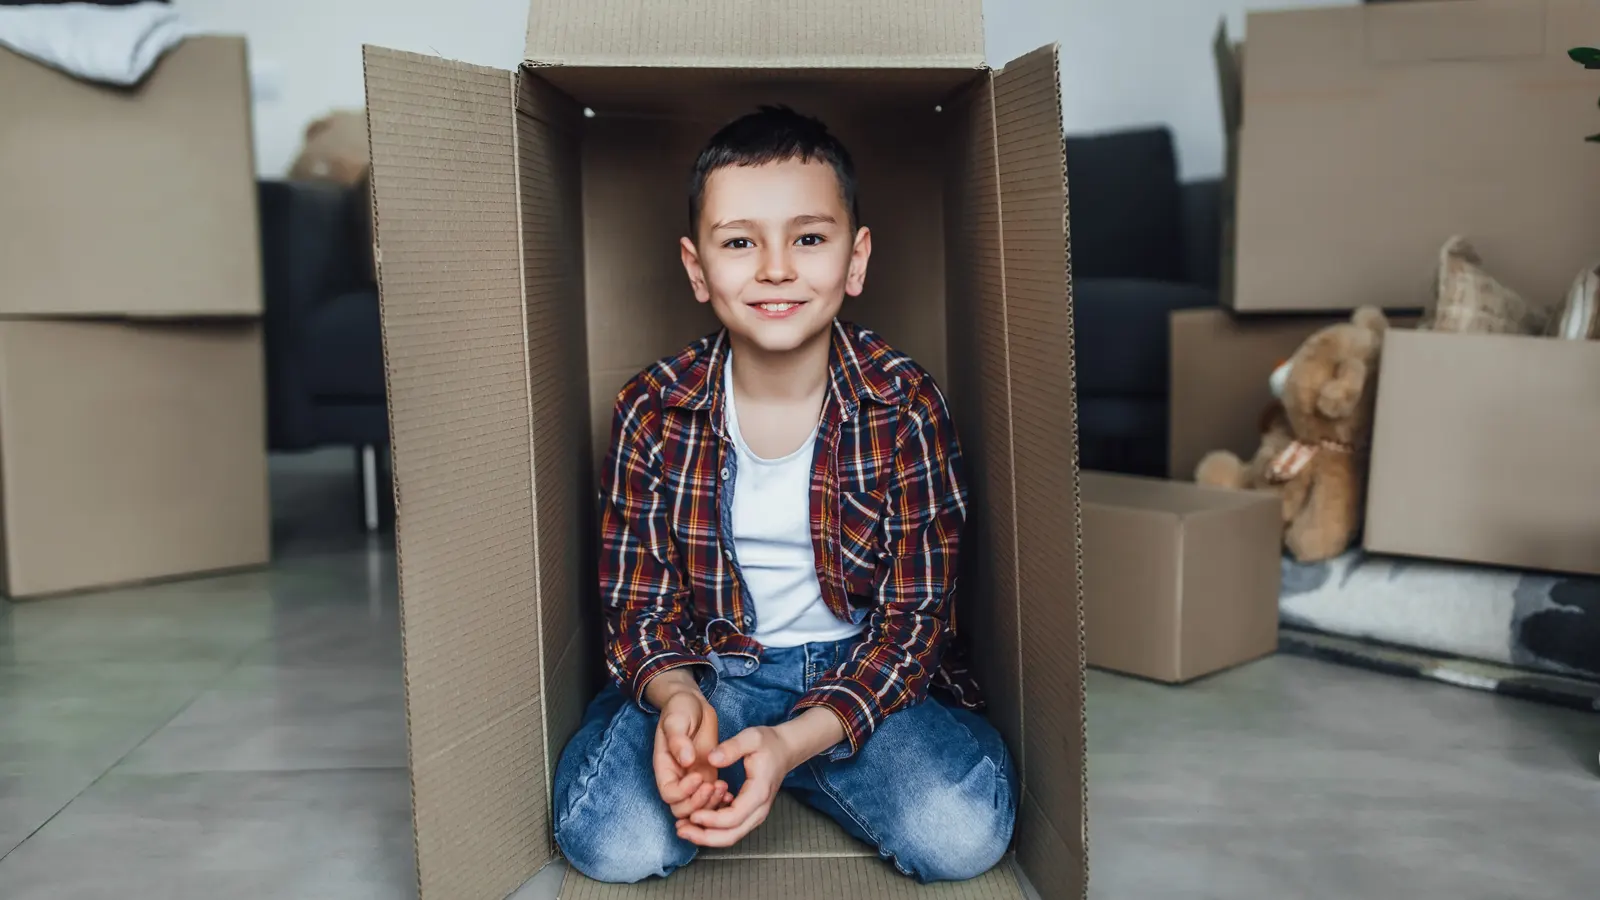 Young boy inside a cardboard box